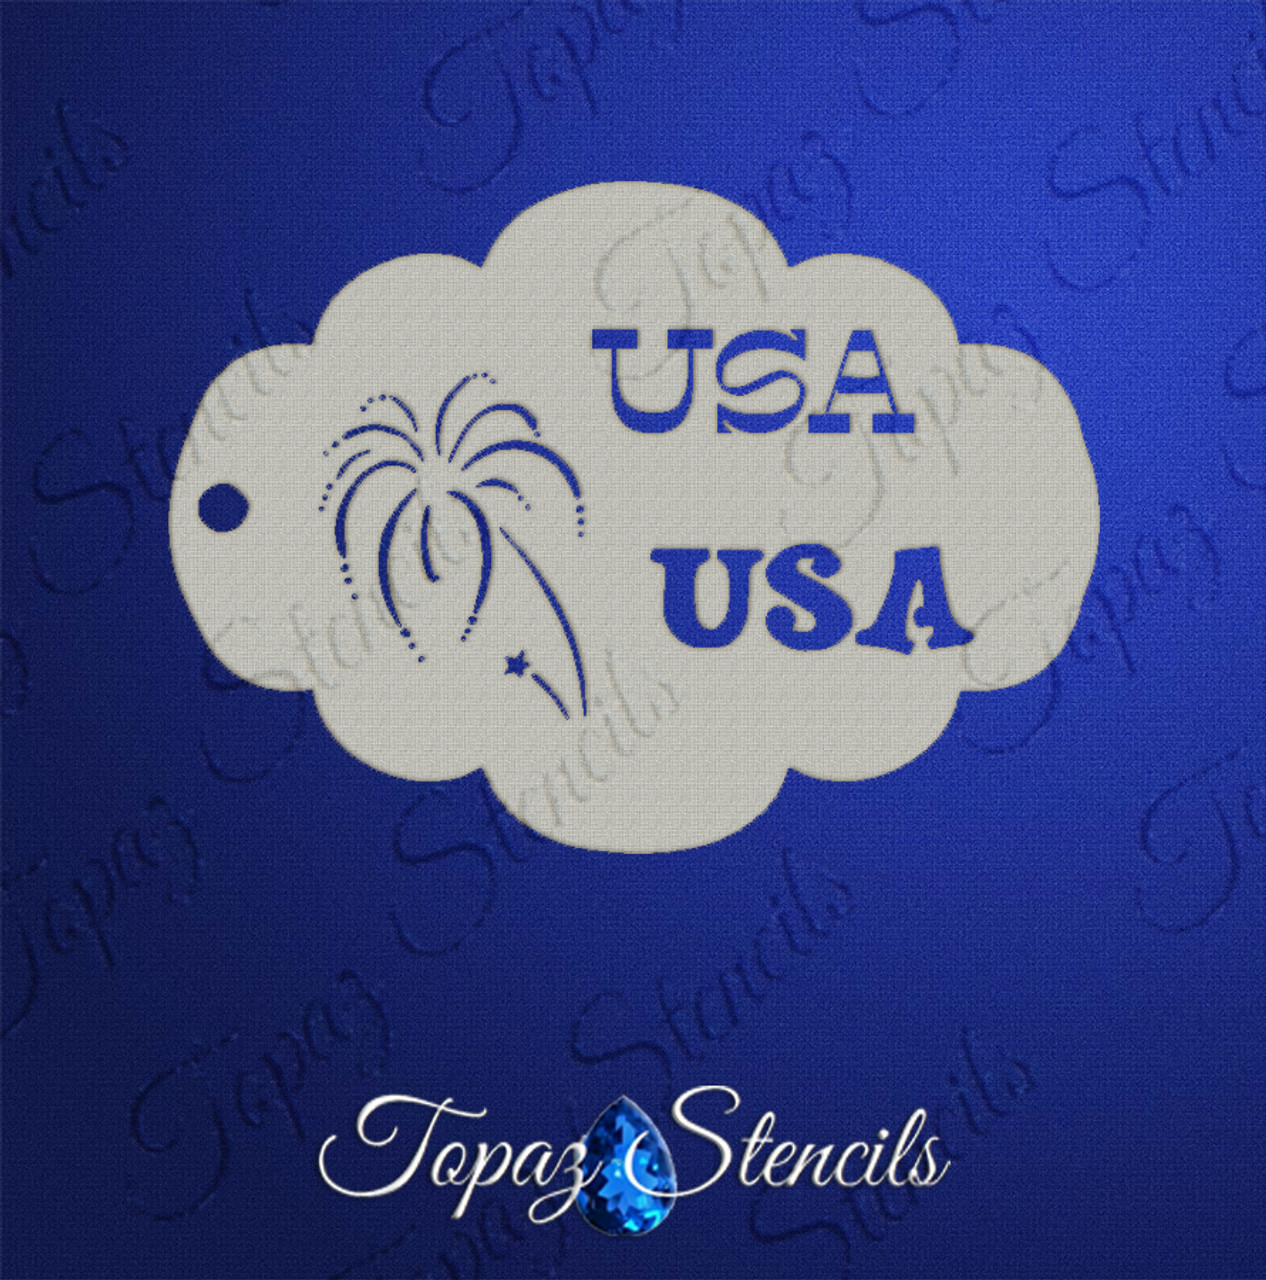 USA - Topaz Stencil